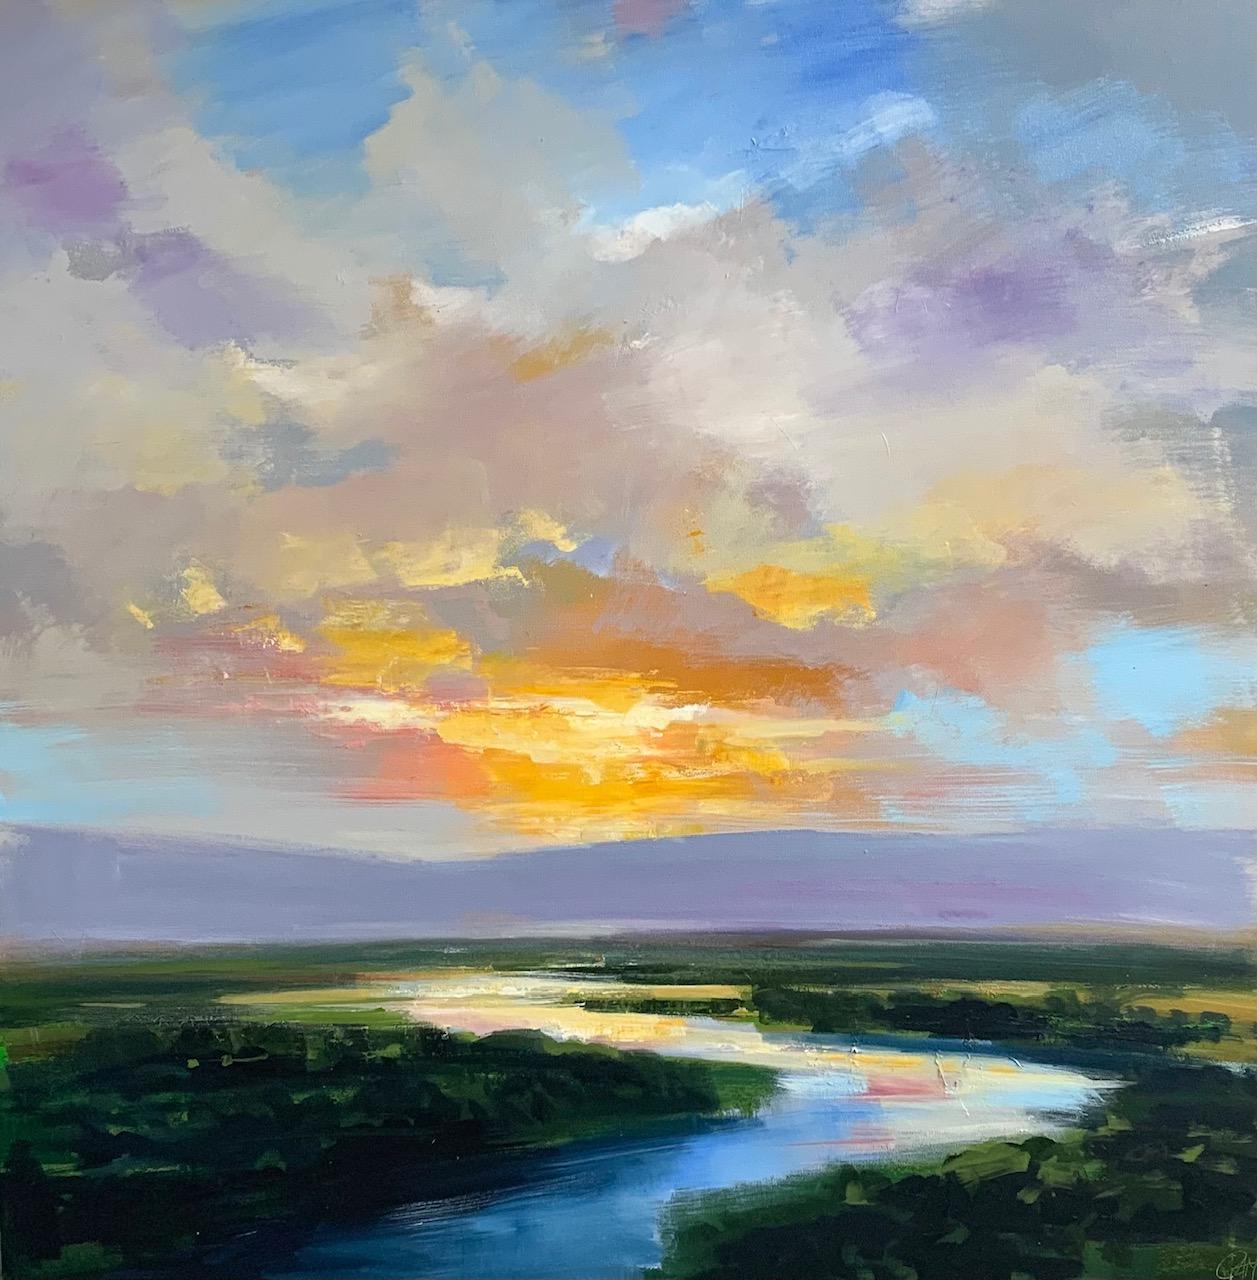 Cette œuvre onirique, "Lingering Light", est une peinture à l'huile sur toile de 46x46 réalisée par l'artiste Craig Mooney représentant une  rivière chatoyante serpentant à travers les méandres de marais verdoyants et herbeux. 

À propos de